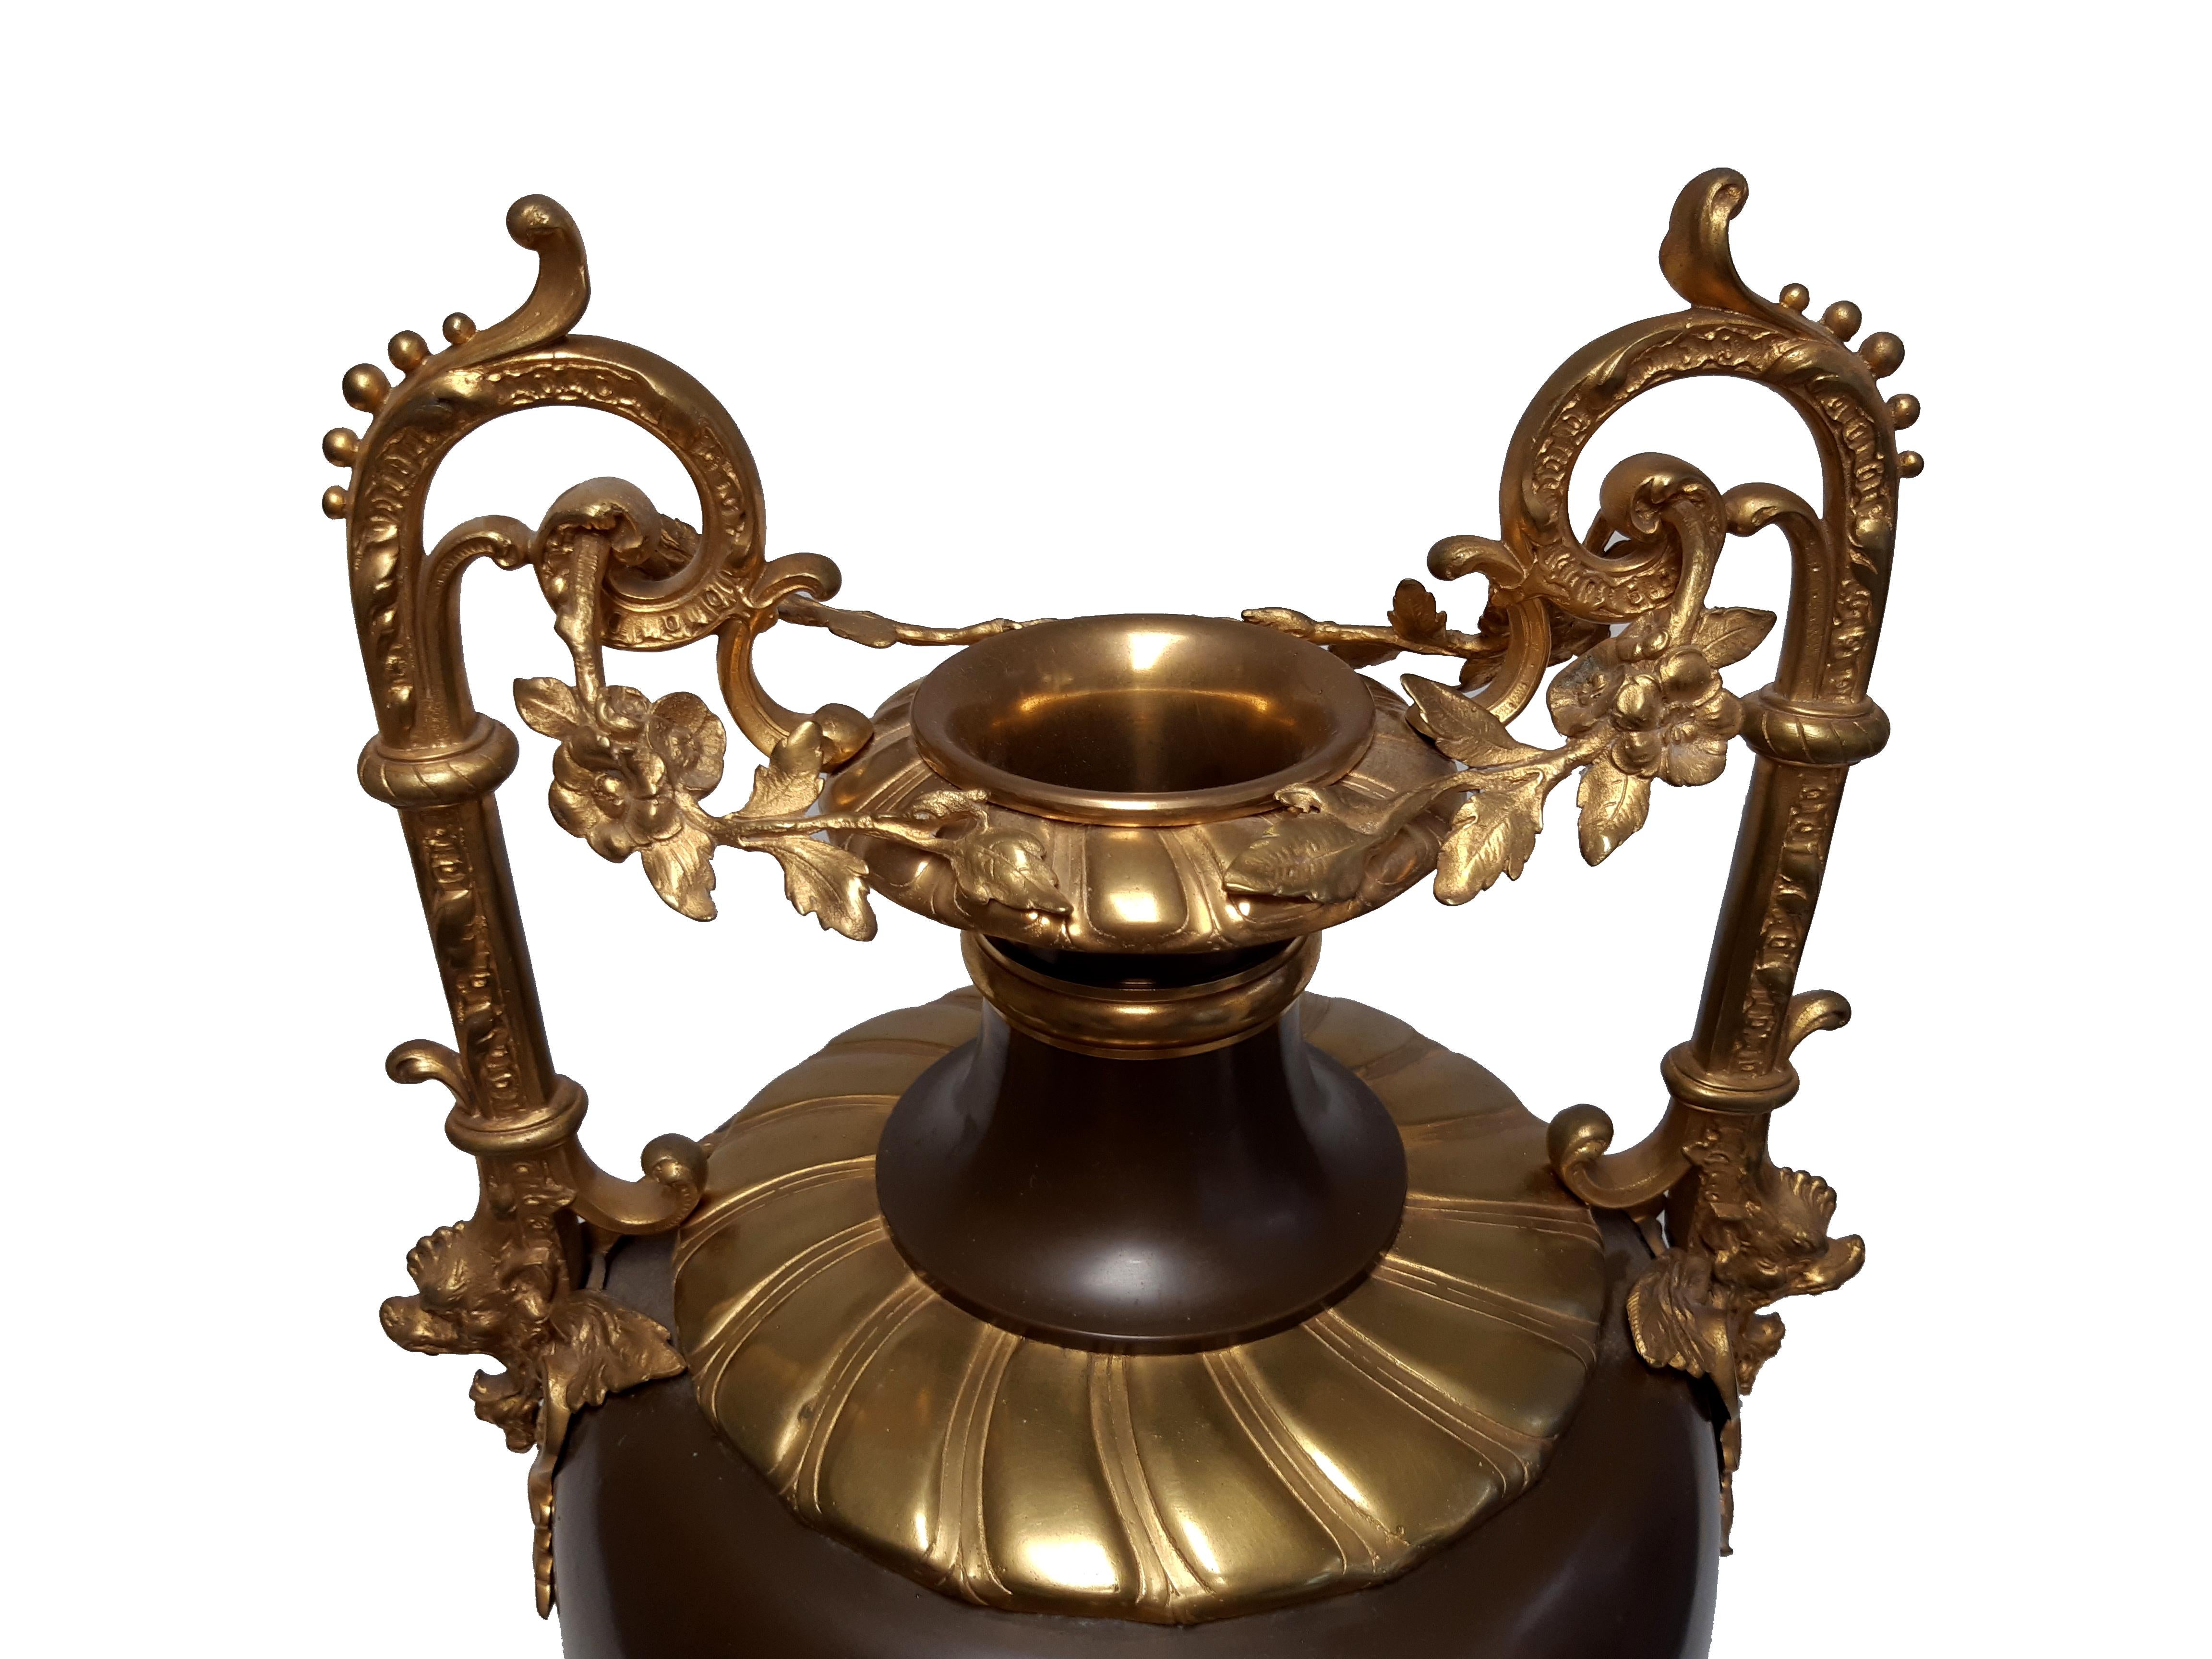 Seltene große Prunkvase in Kupfer und vergoldeter Bronze, wohl um 1870, möglicherweise Frankreich oder Russland.

Auf der versilberten Kupferguss-Kartusche Darstellung einer mit Gewand bekleideten Frau, einen mit Blumenkorb tragend, von unten von